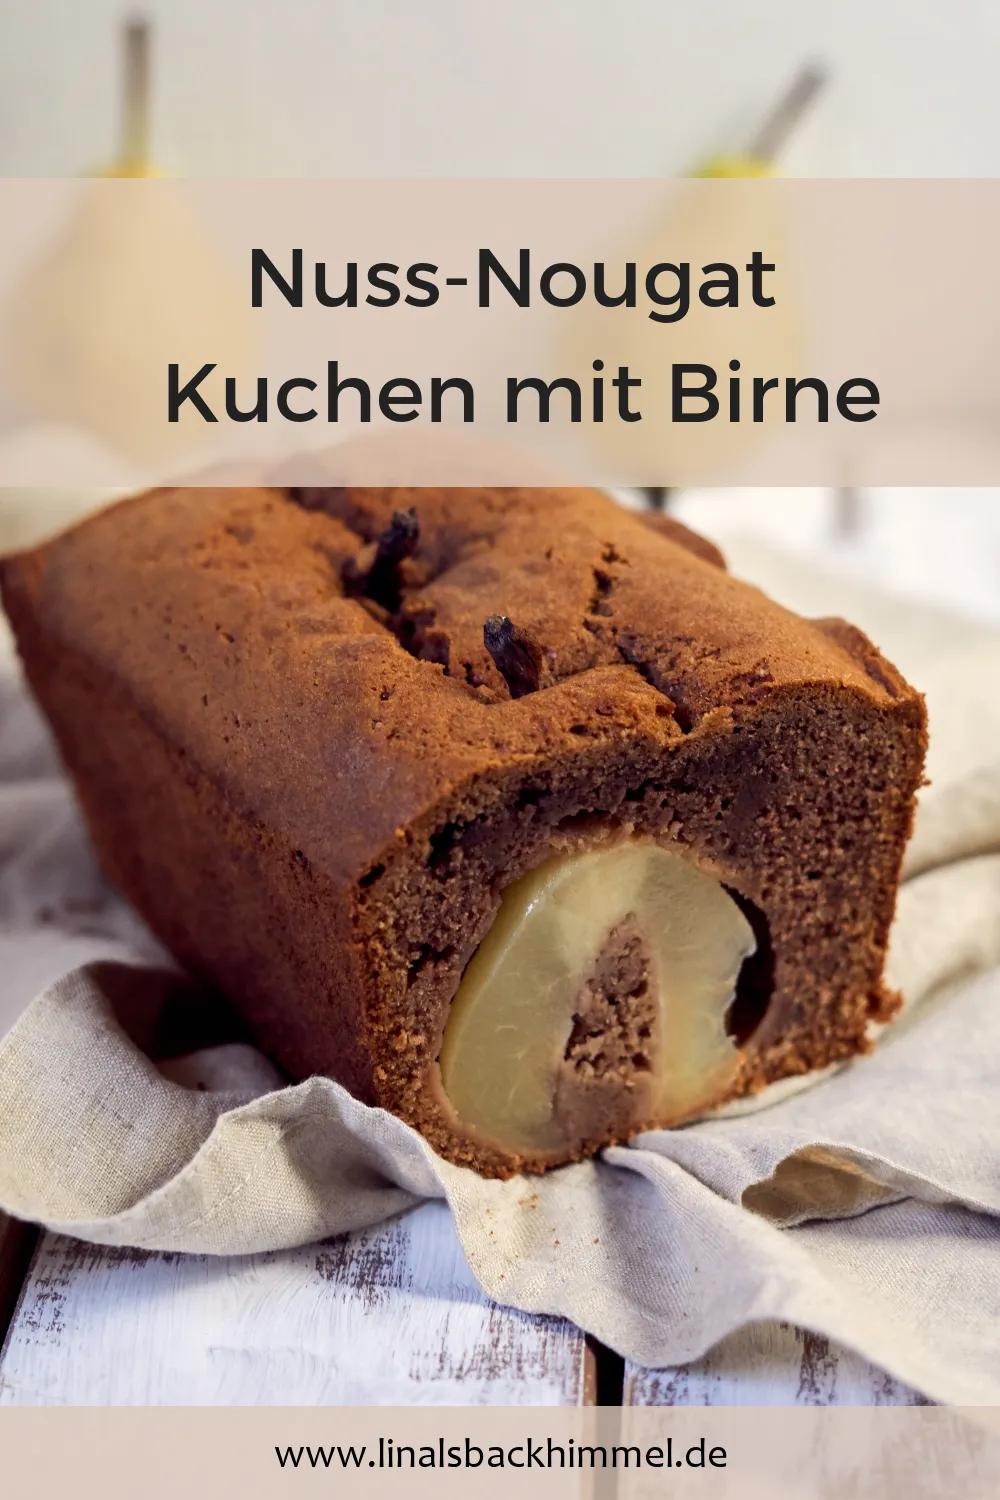 Nuss-Nougat Kuchen mit Birne | Kuchen, Kuchen und torten, Dessert ideen